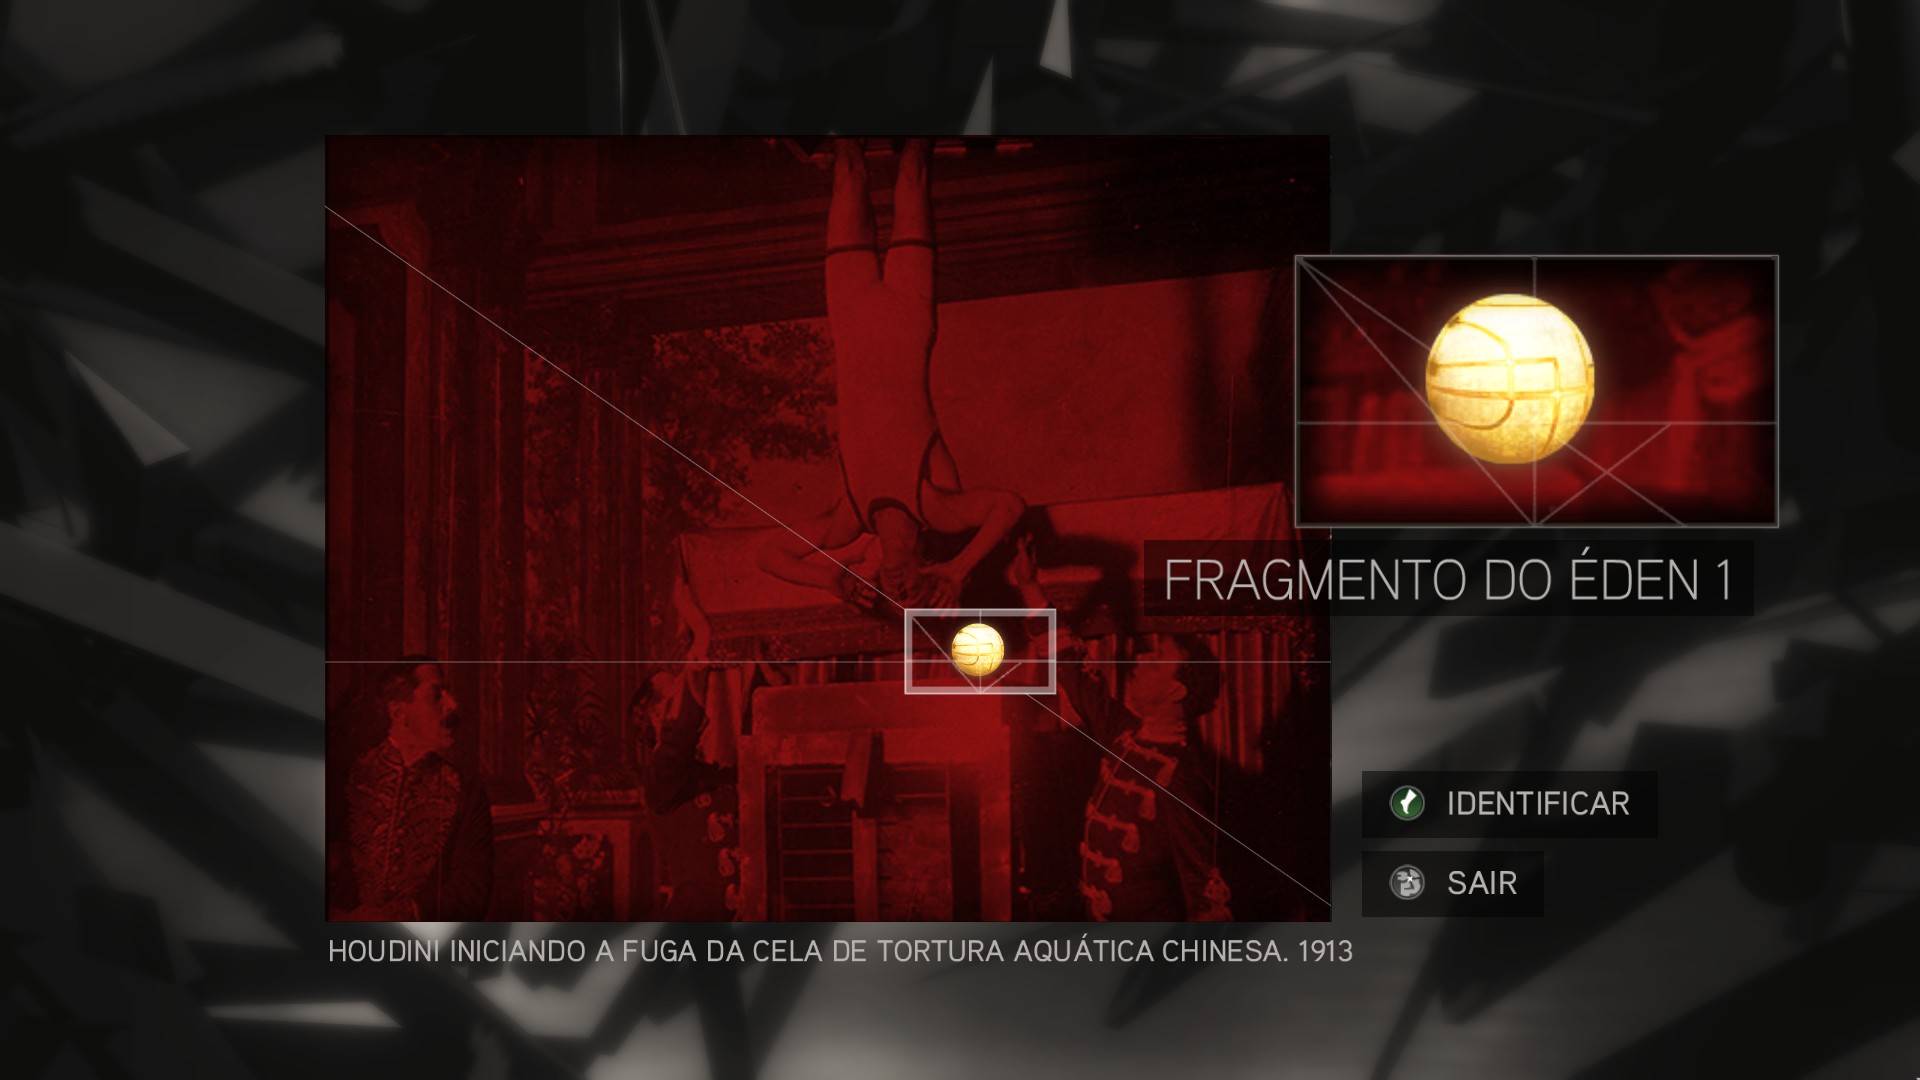 Comunidade Steam :: Guia :: Assassin's Creed II: Como resolver